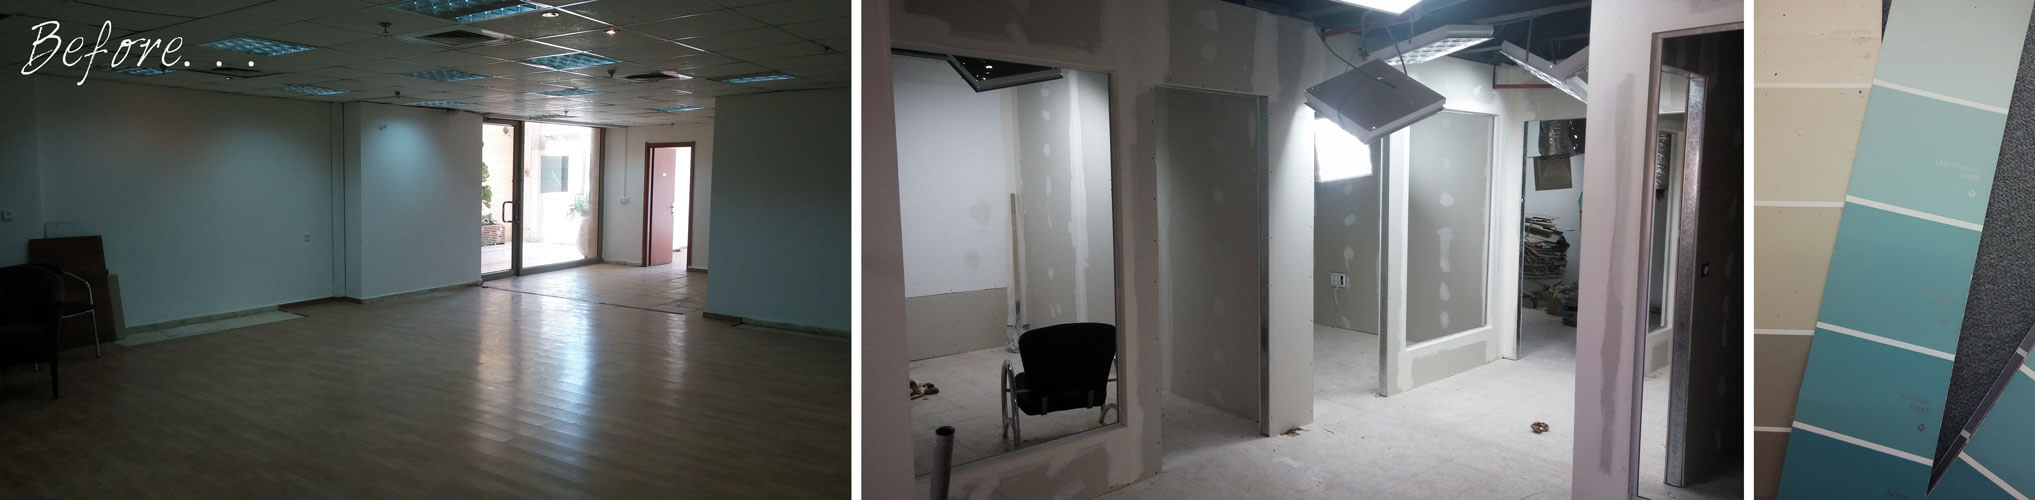 חלל המשרדים לפני השיפוץ- ריק, מוזנח וחשוך ובתהליך העבודה-חלוקה לחללים ופלטת צבעים